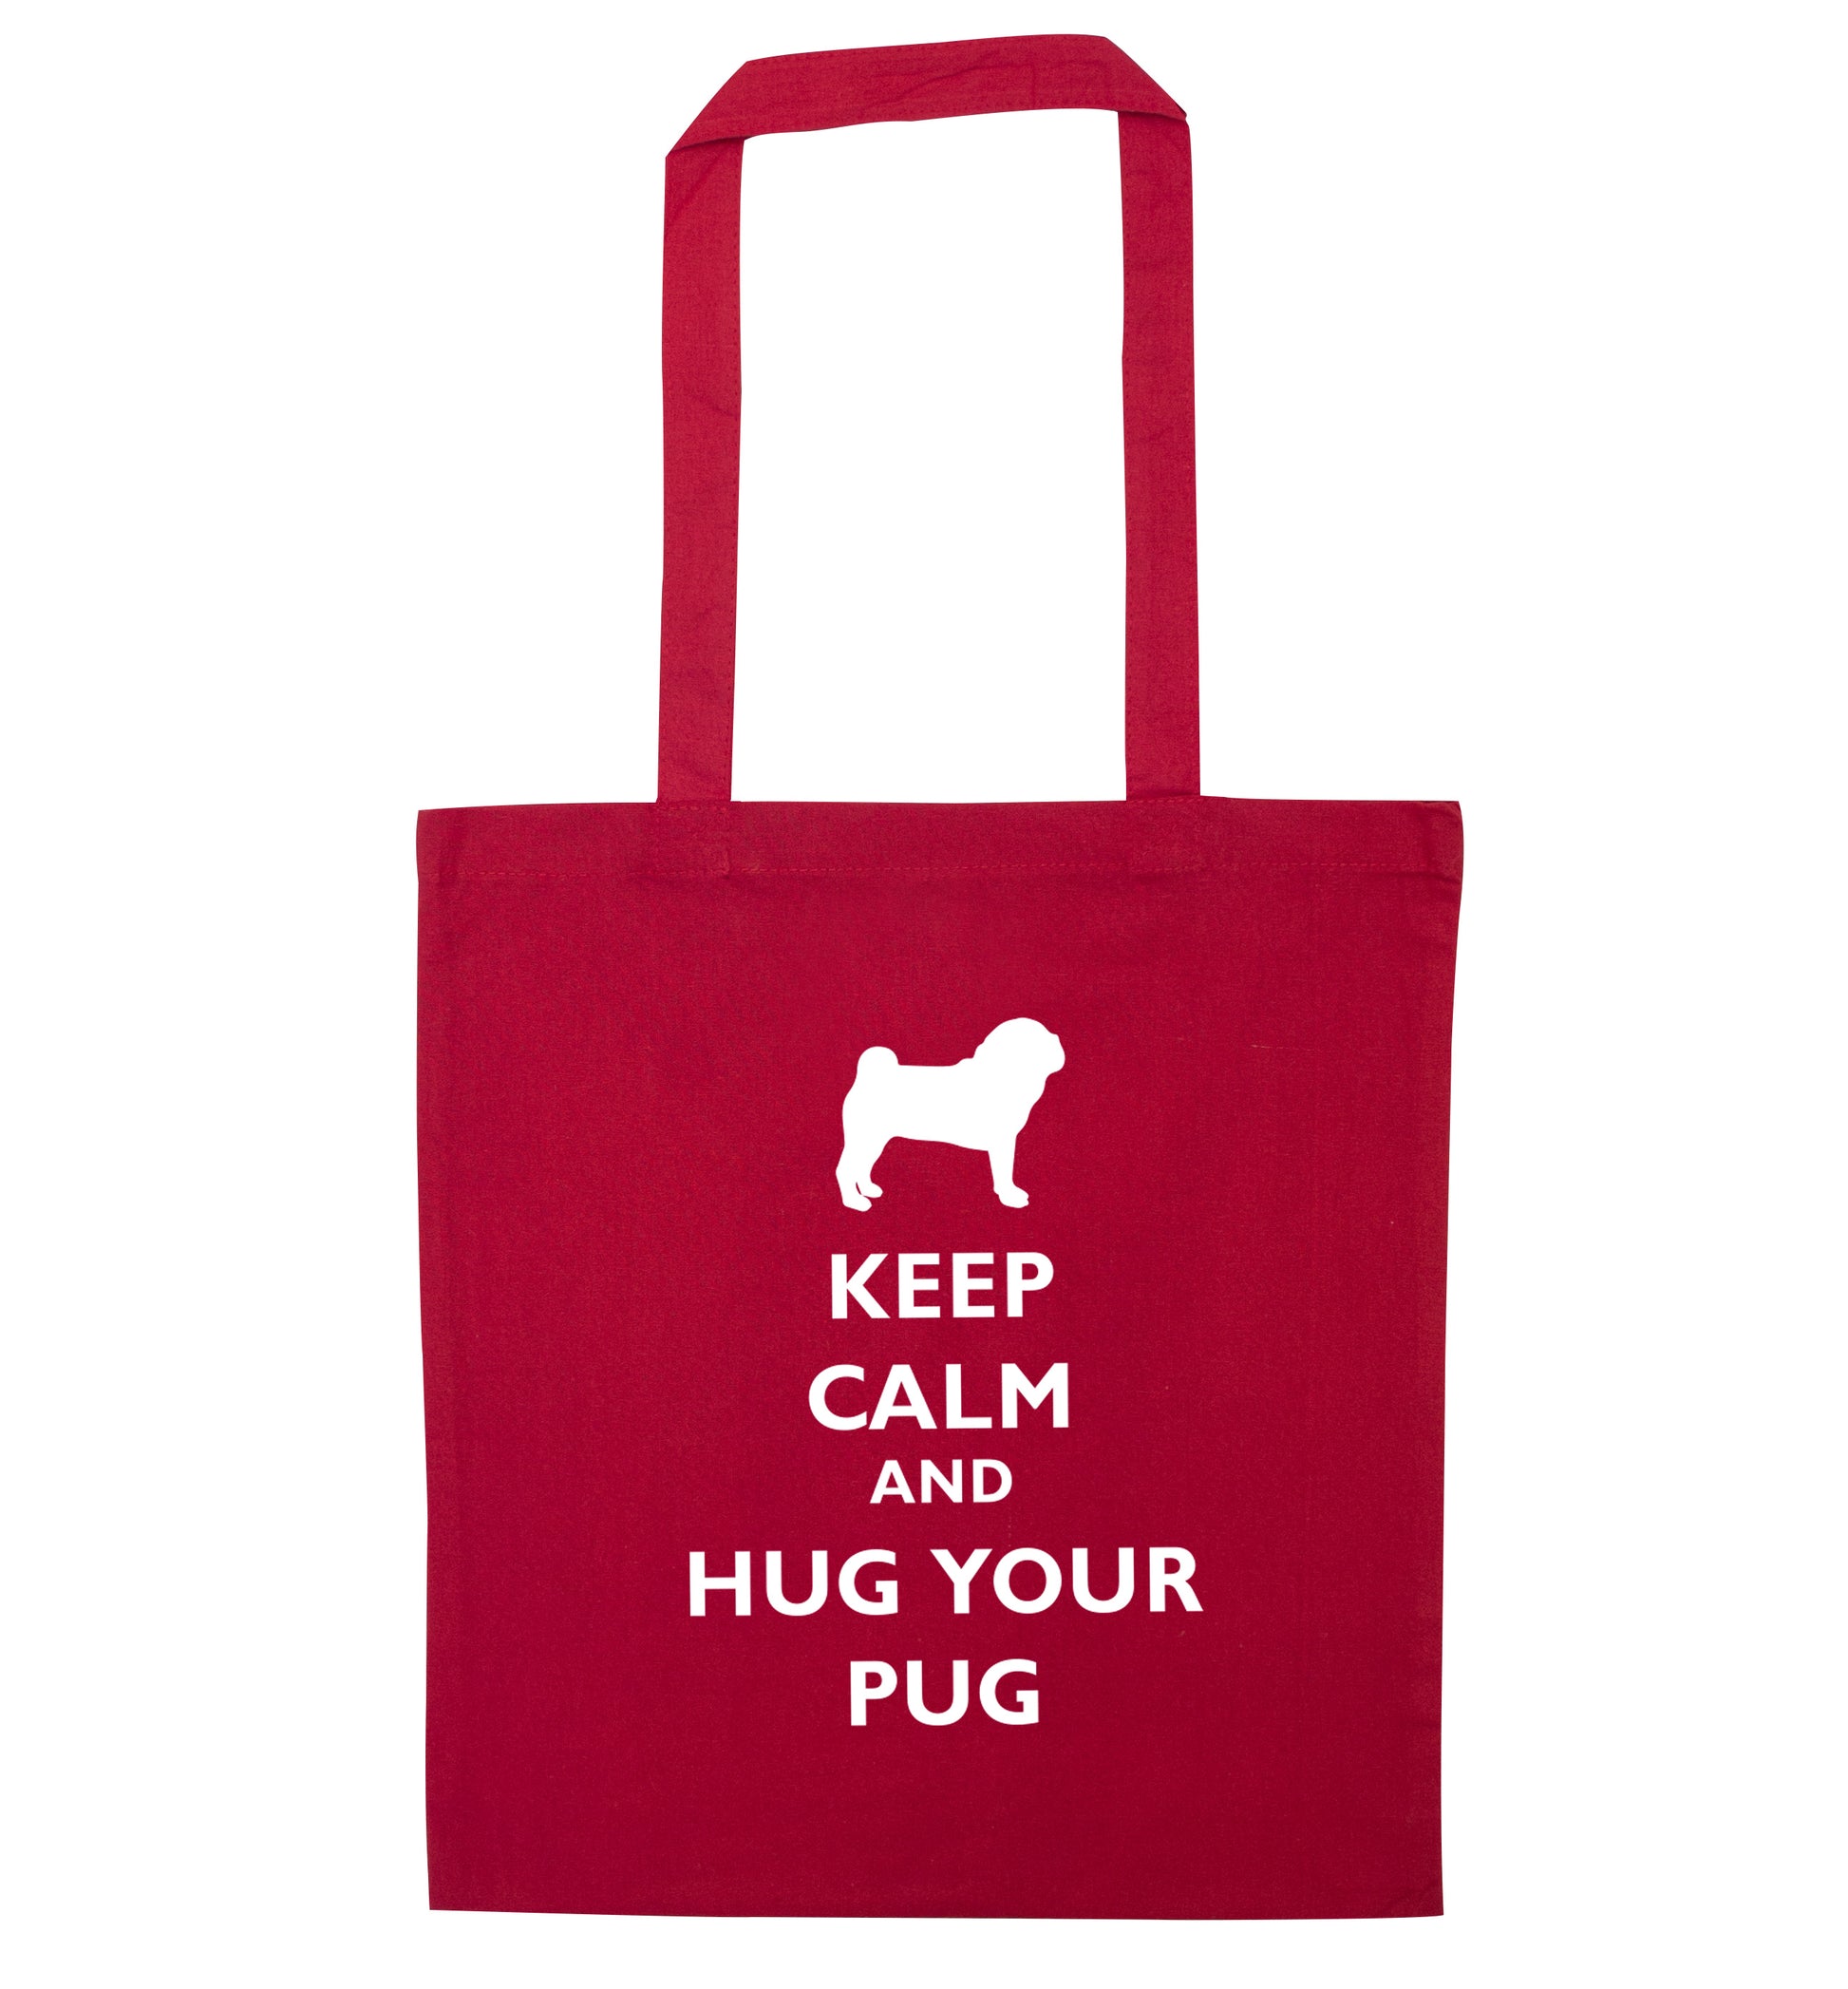 Keep calm and hug your pug red tote bag